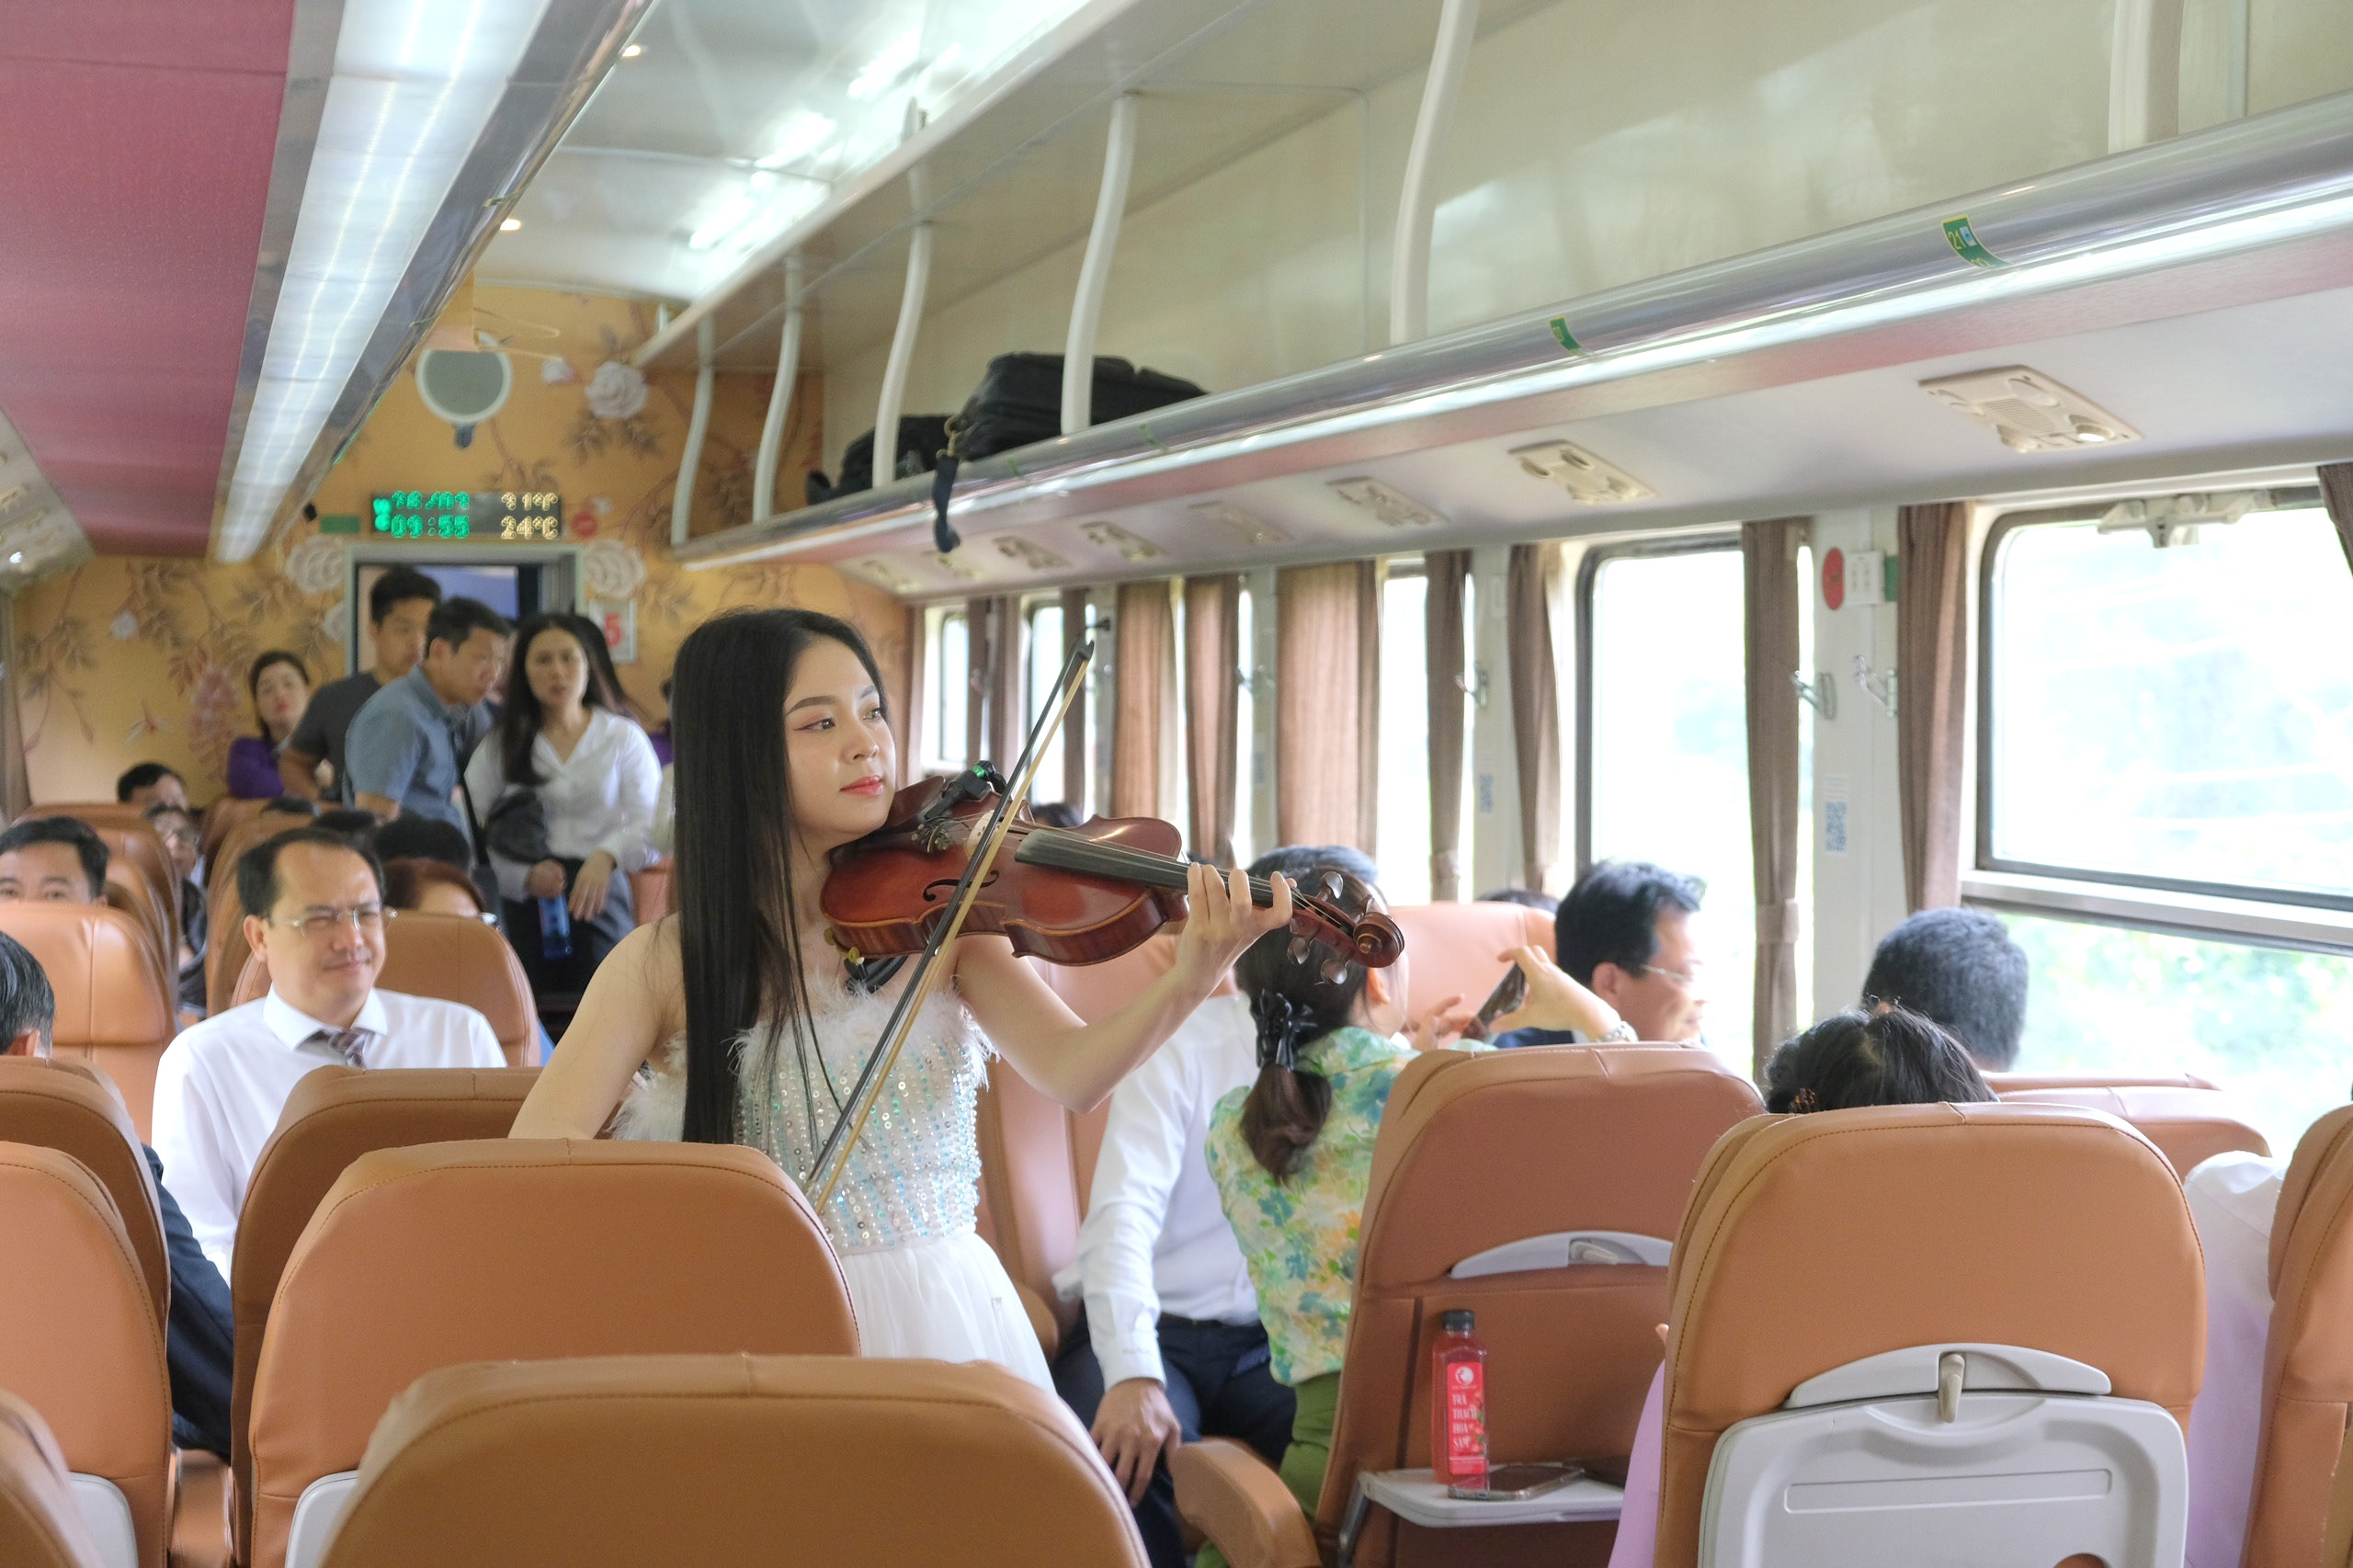 Biểu diễn vĩ cầm phục vụ hành khách trên chuyến tàu 5 sao Kết nối di sản miền Trung (Huế - Đà Nẵng)